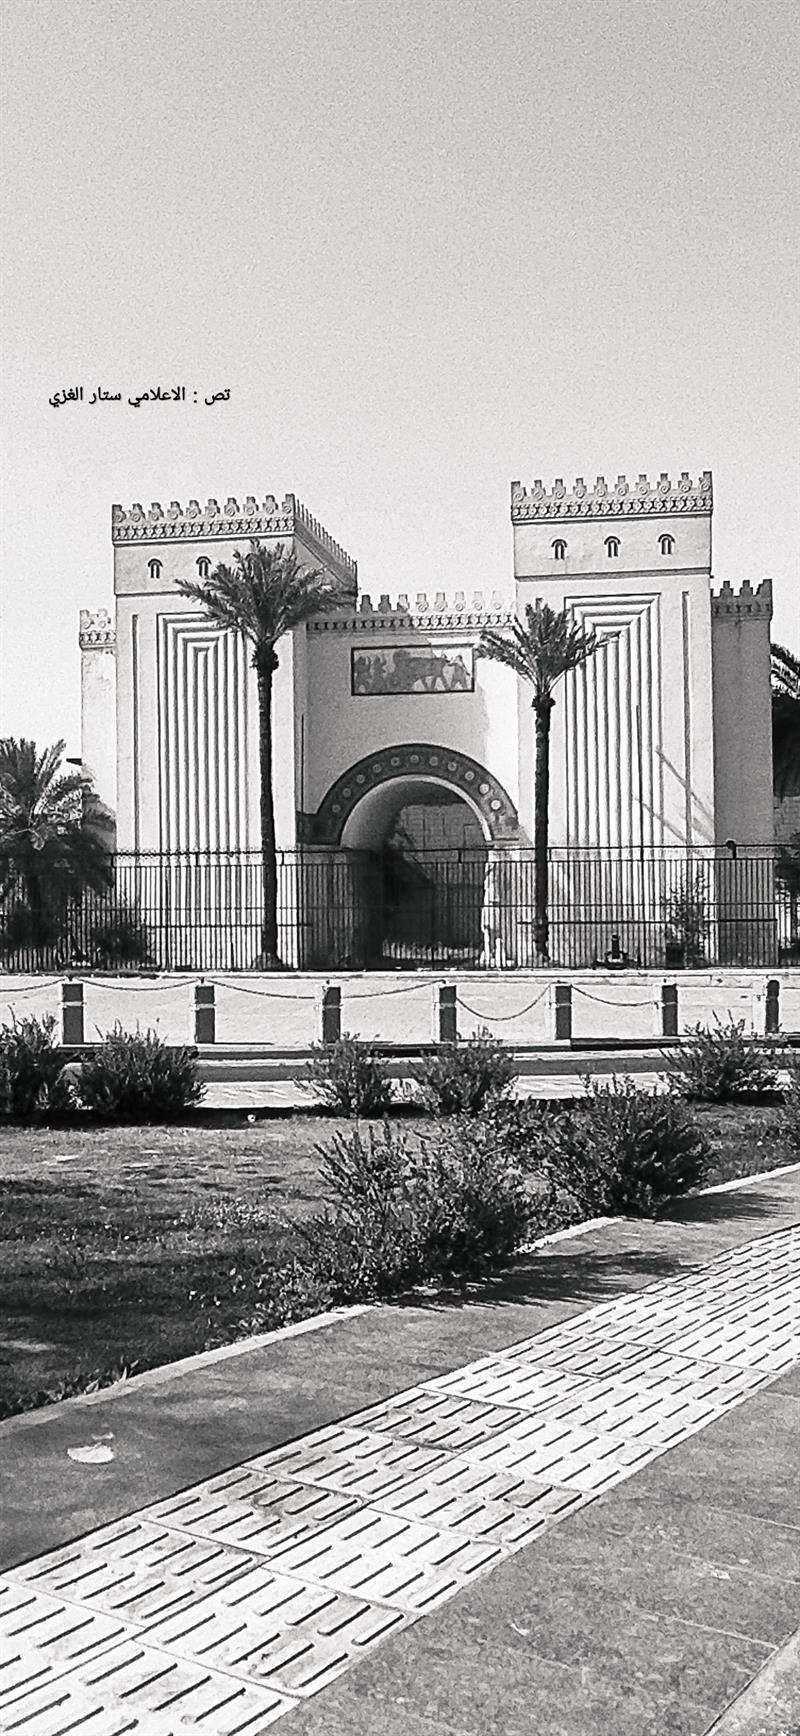 الاثار والتراث تعتزم اعادة تاهيل المتحف العراقي للشروع بافتتاحه امام الجمهور